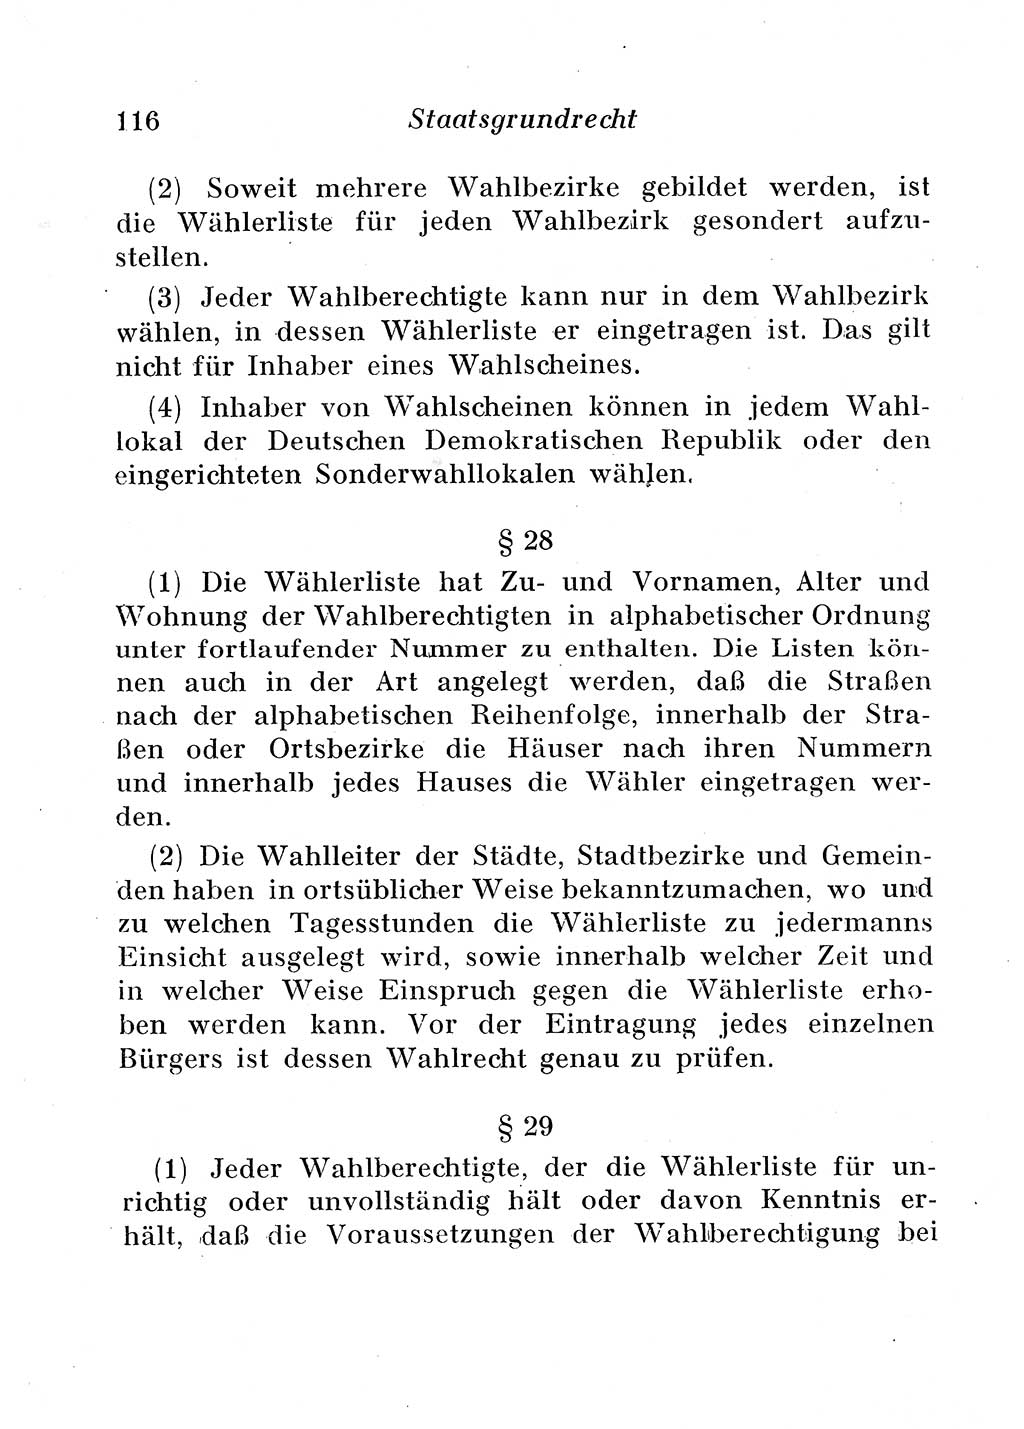 Staats- und verwaltungsrechtliche Gesetze der Deutschen Demokratischen Republik (DDR) 1958, Seite 116 (StVerwR Ges. DDR 1958, S. 116)